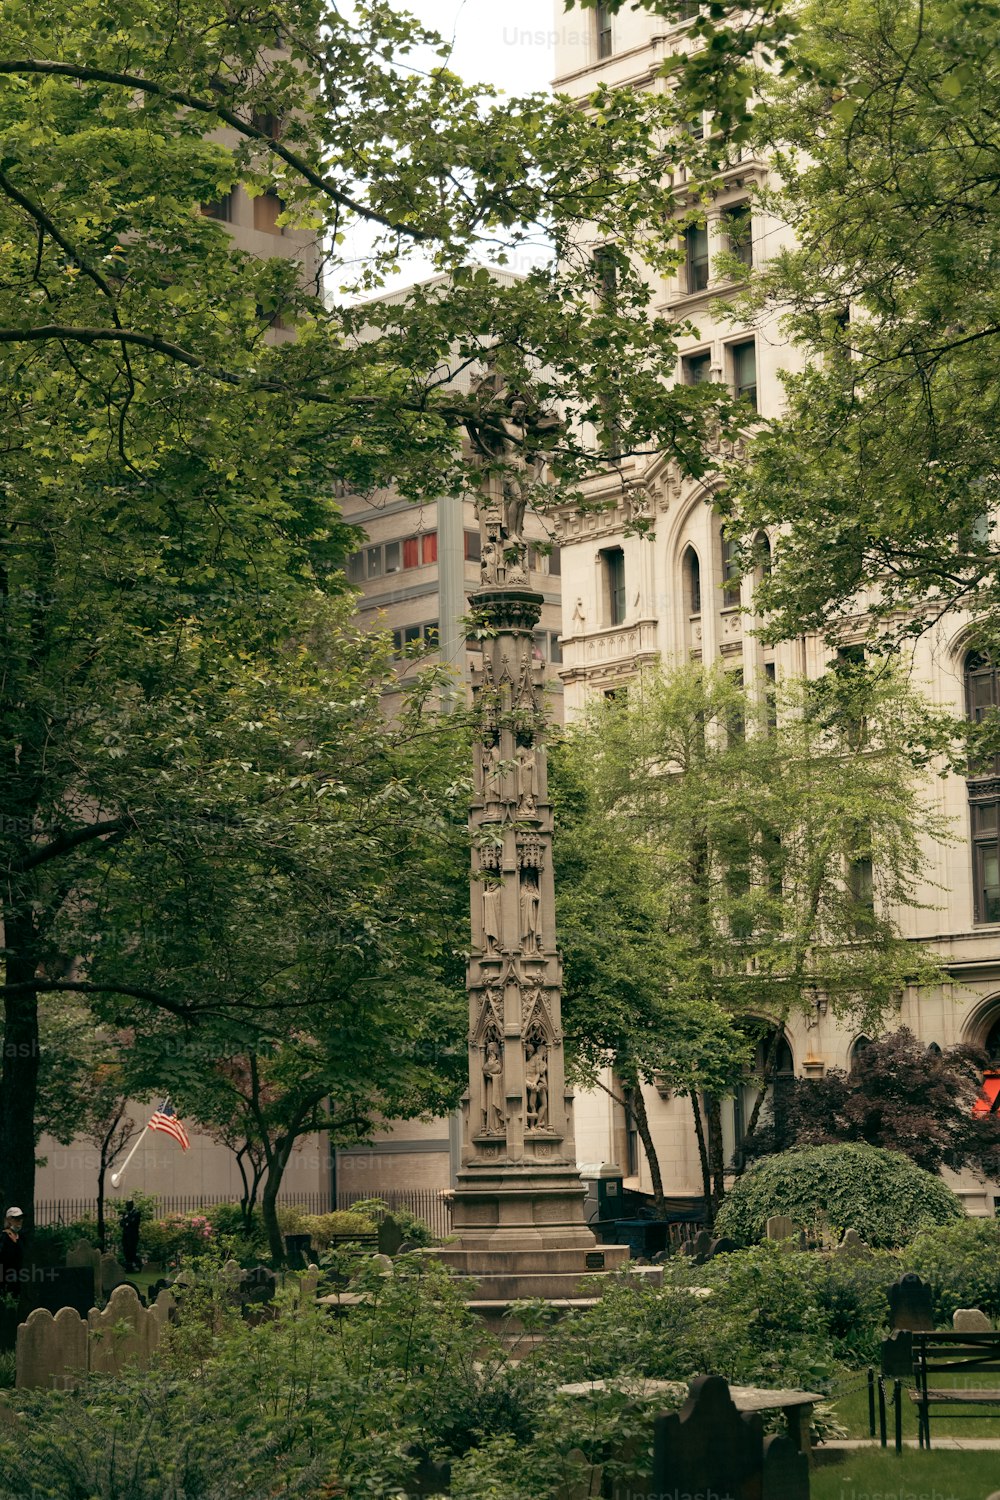 Una alta torre del reloj sentada en medio de un parque